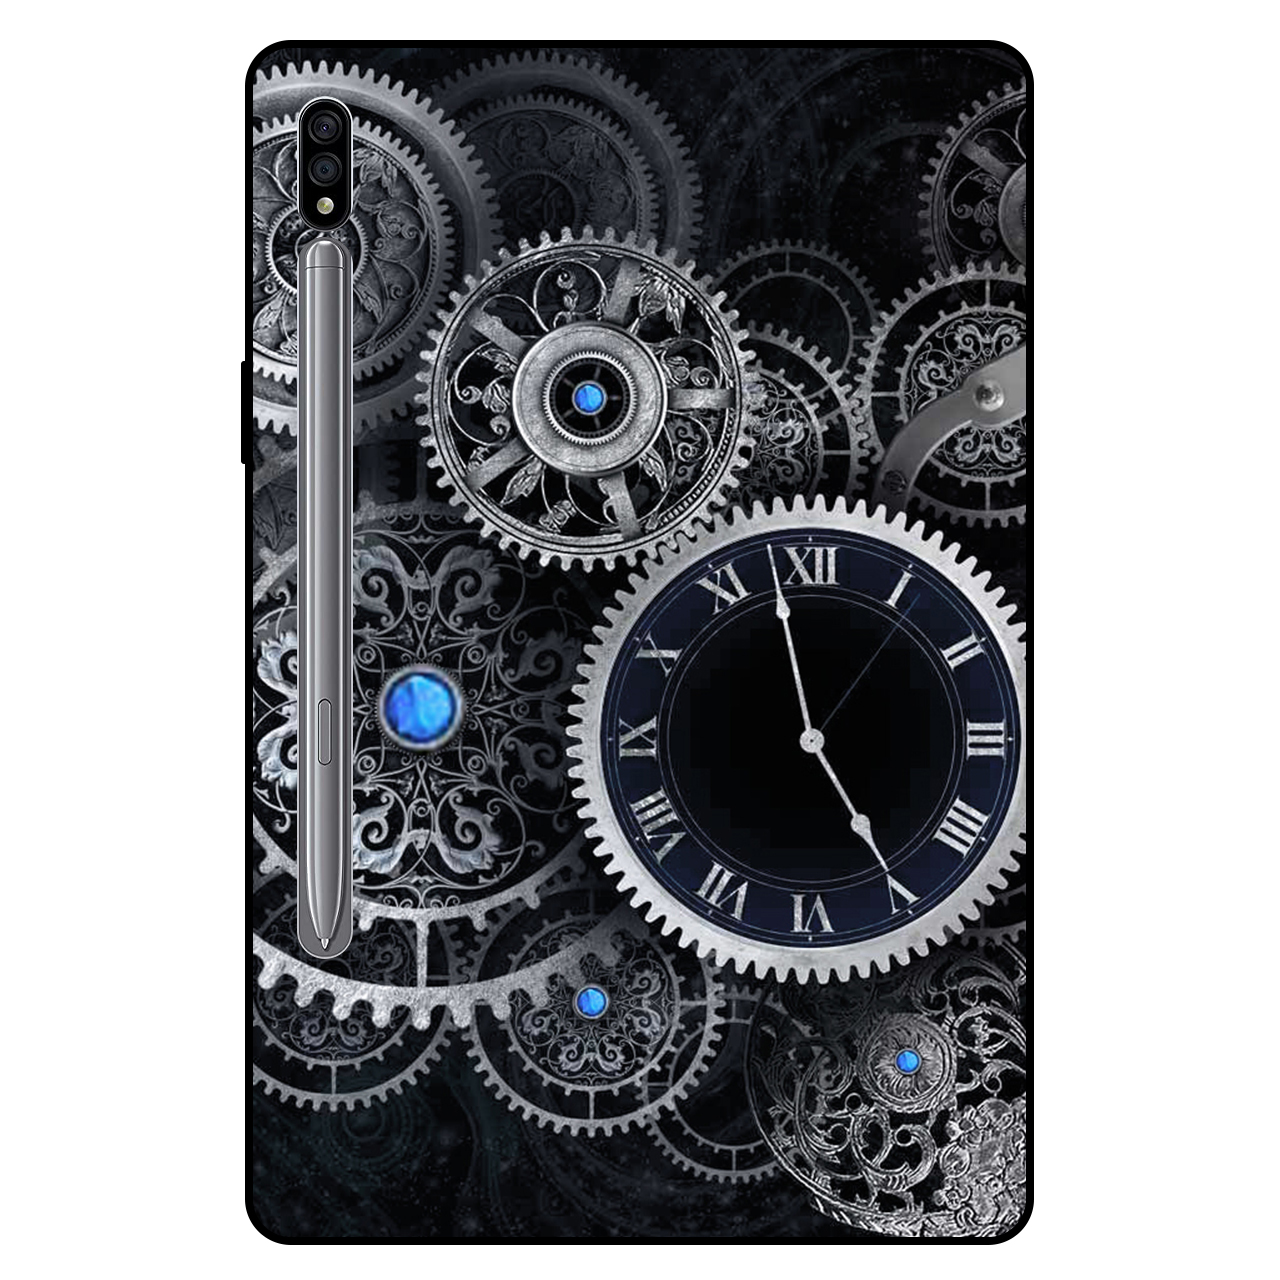 کاور مگافون طرح ساعت مدل 7741 مناسب برای تبلت سامسونگ Galaxy Tab S7 11.0 2020 / T870 / T875 / T876